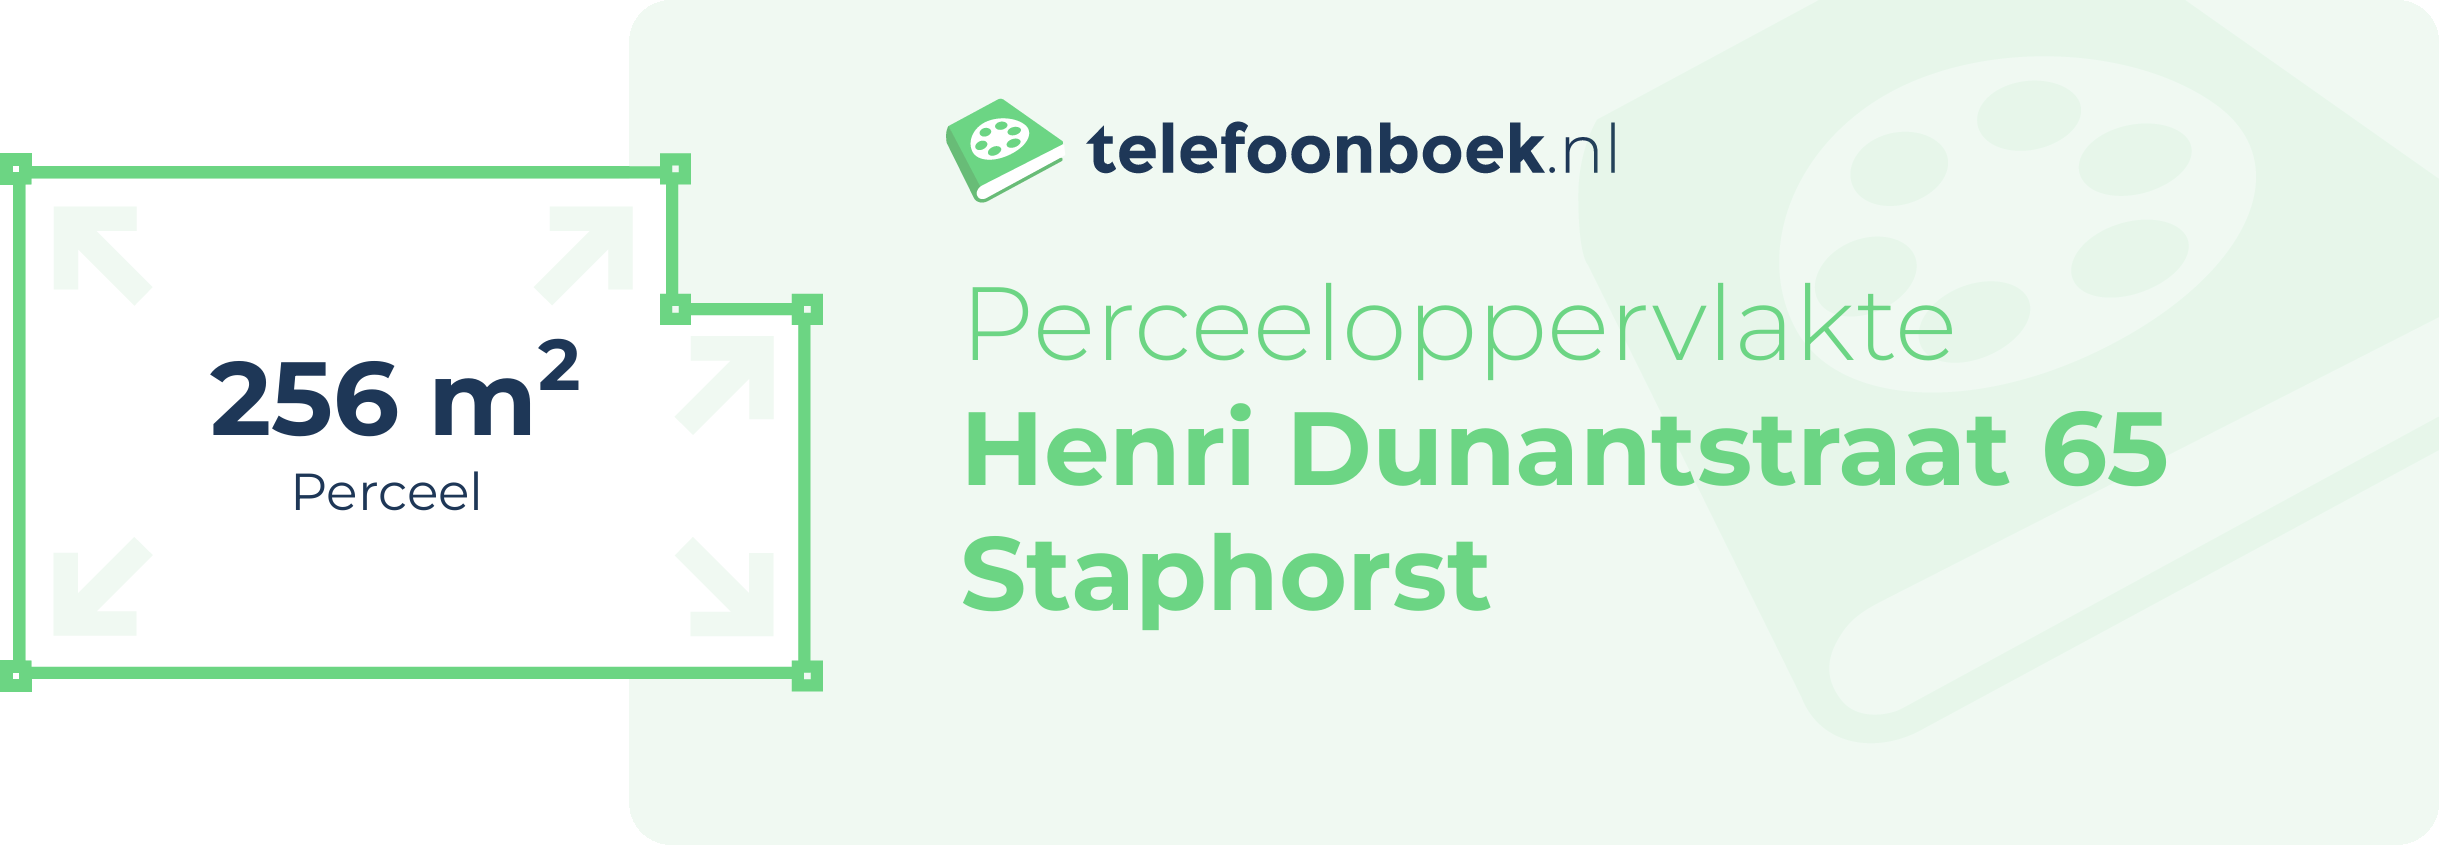 Perceeloppervlakte Henri Dunantstraat 65 Staphorst